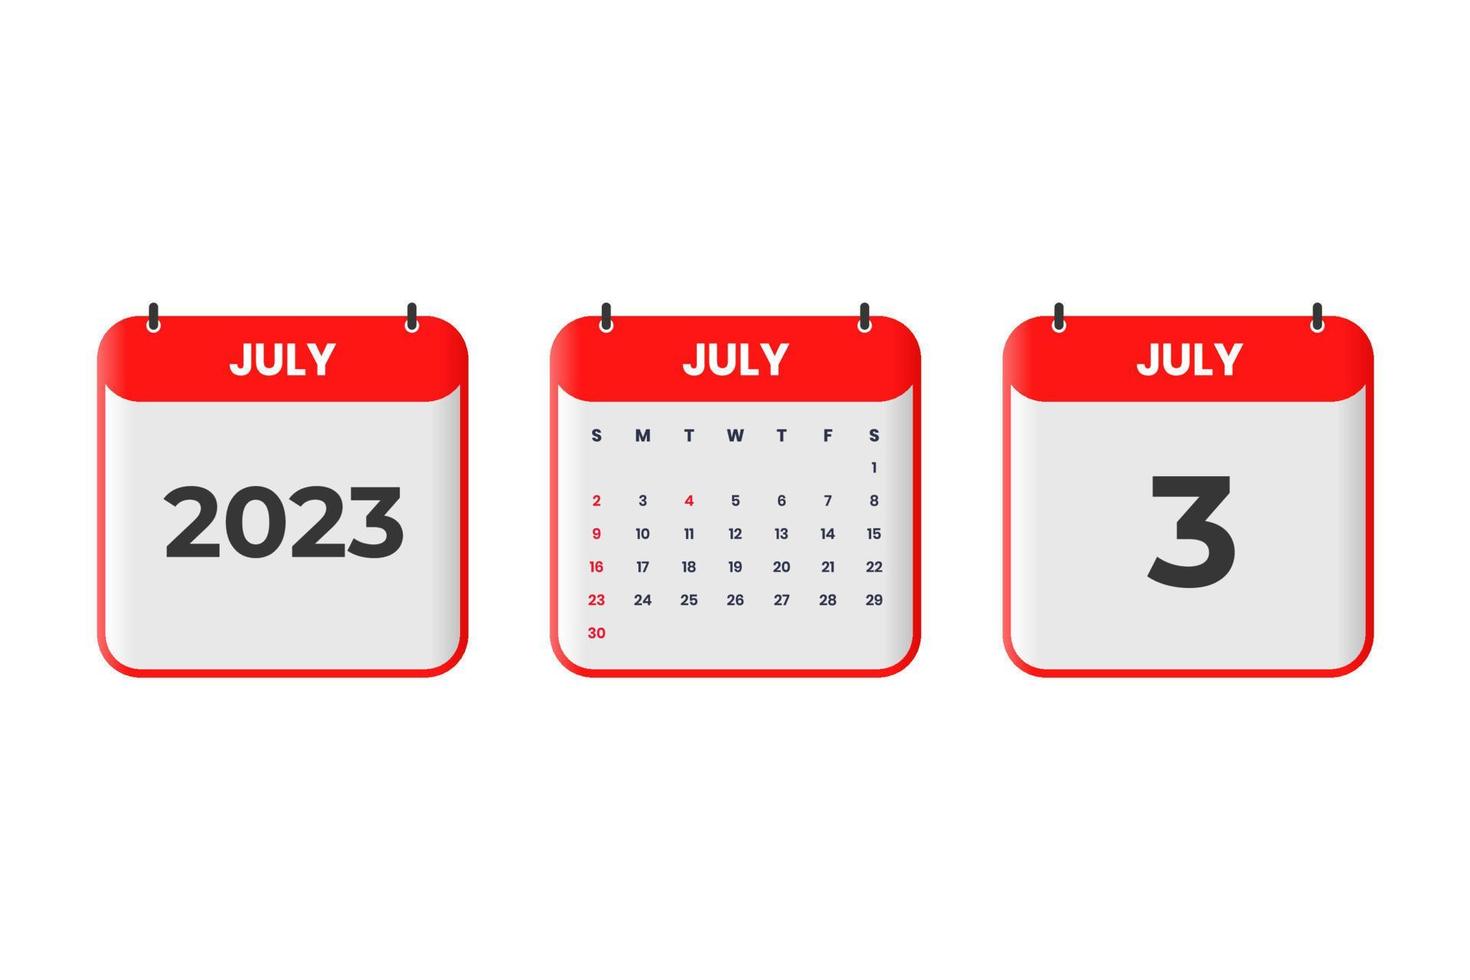 juli 2023 kalender design. 3:e juli 2023 kalender ikon för schema, utnämning, Viktig datum begrepp vektor